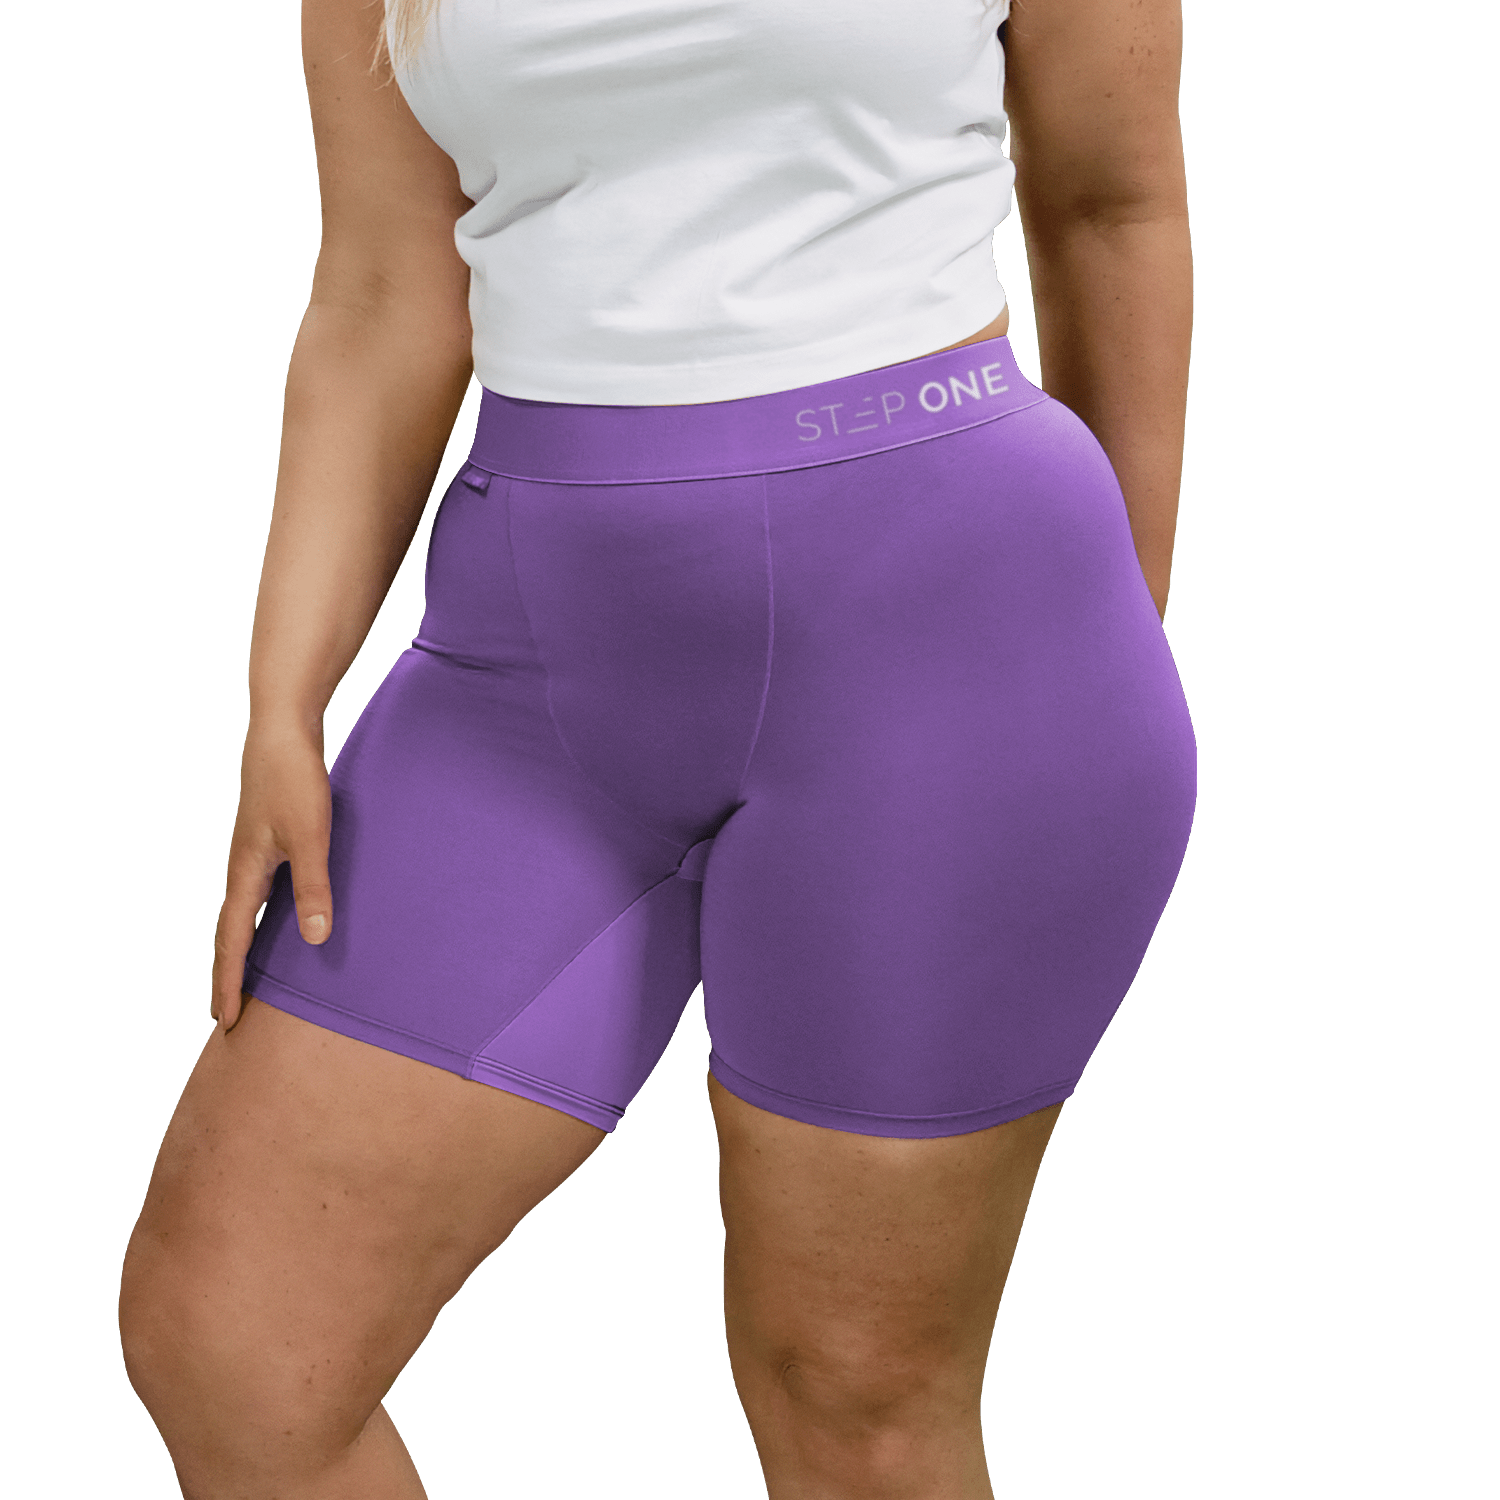 Women's Body Shorts - Tap Shoe